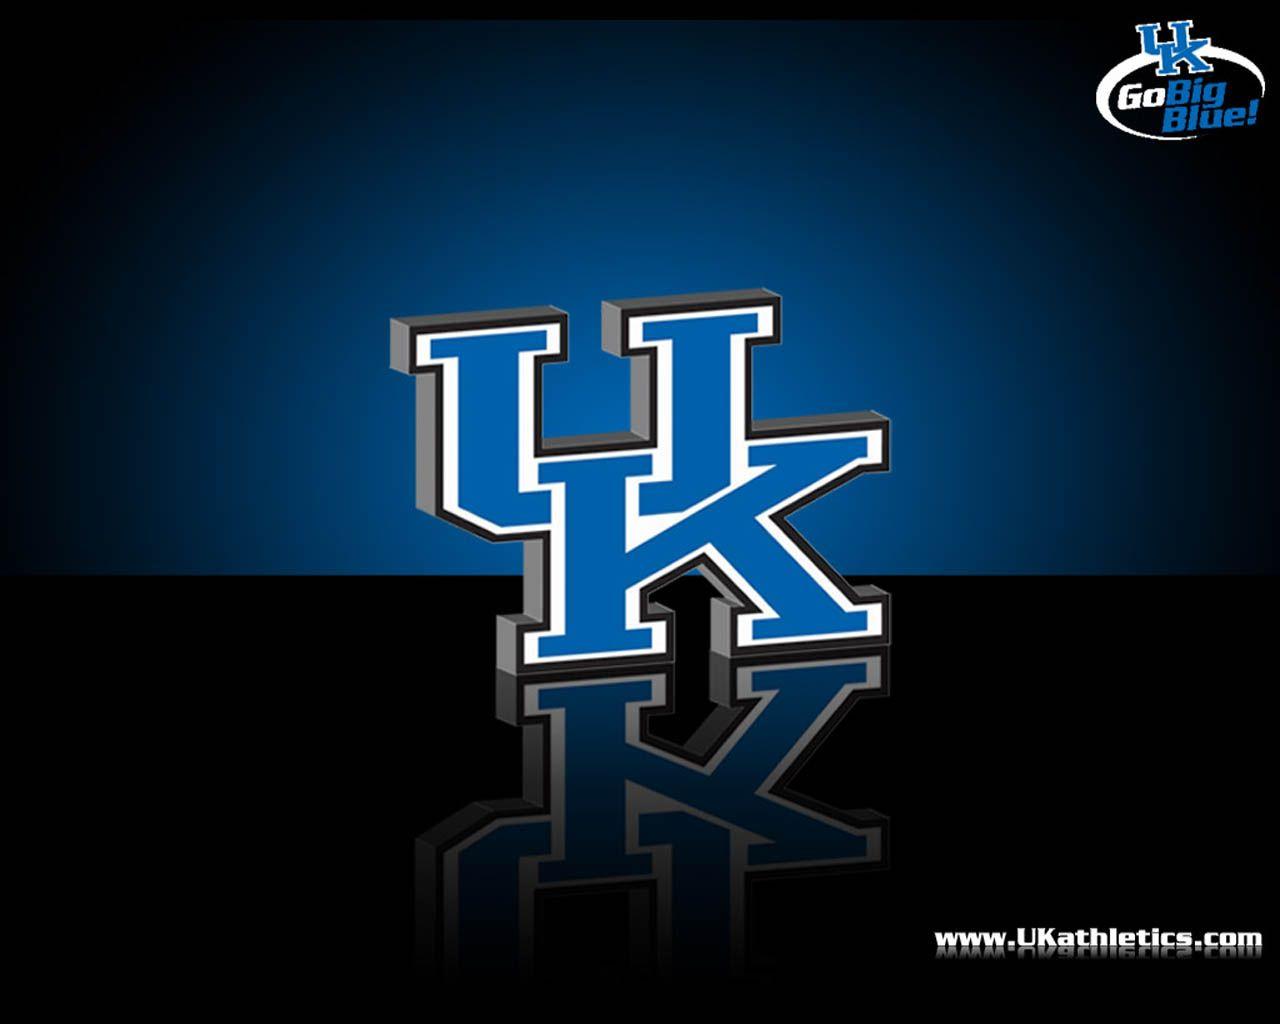 Kentucky wildcats football HD wallpapers  Pxfuel